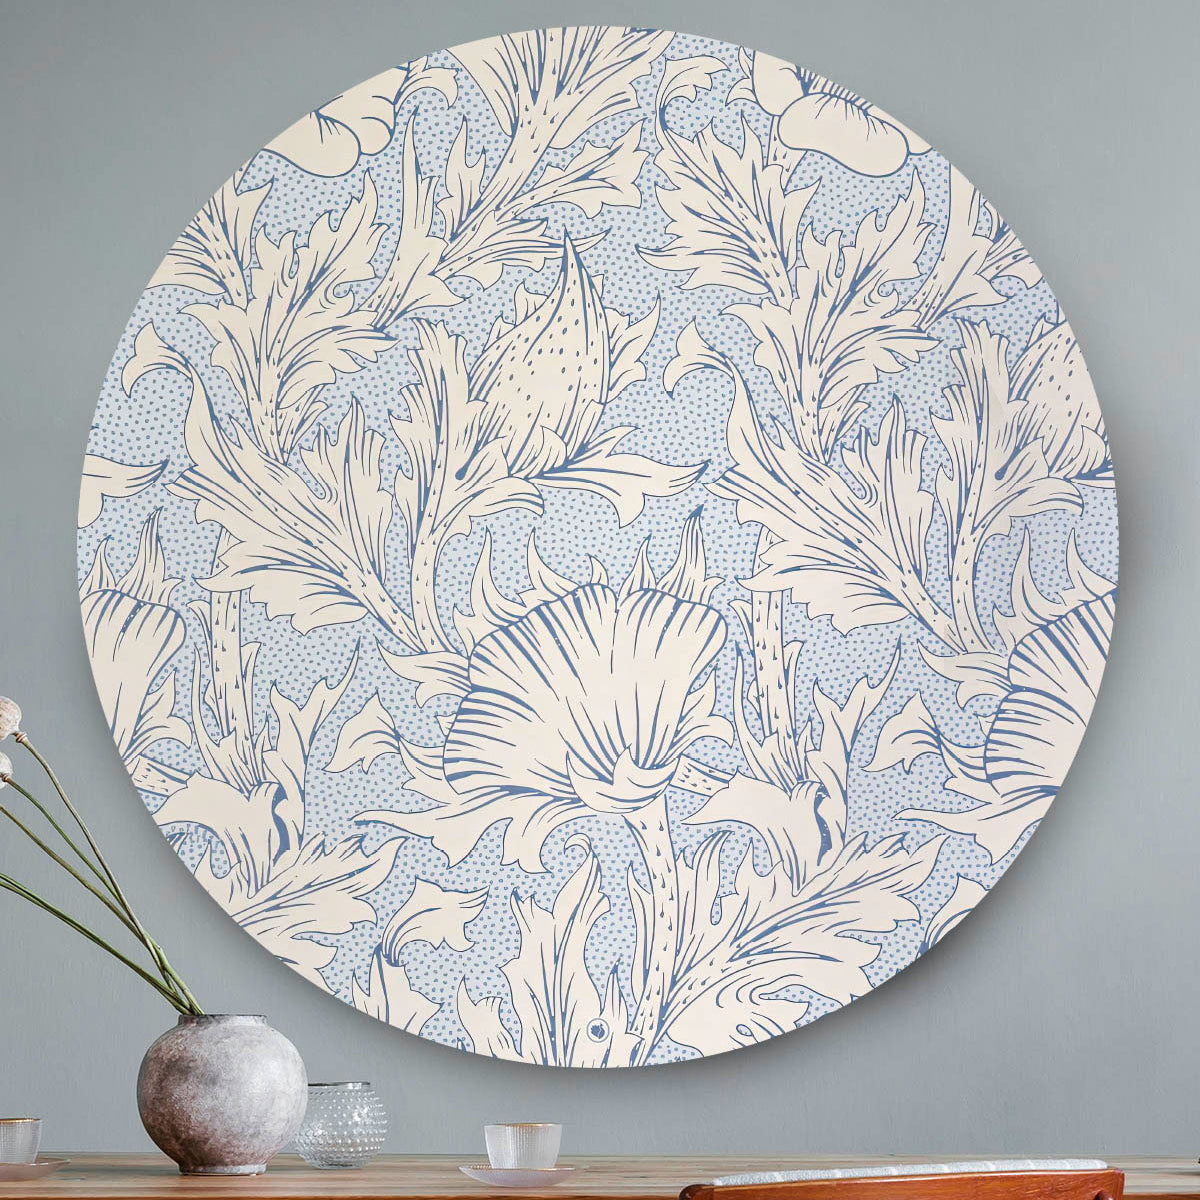 Wandcirkel met licht blauw bloemenpatroon tegen een grijze muur en een houten tafel